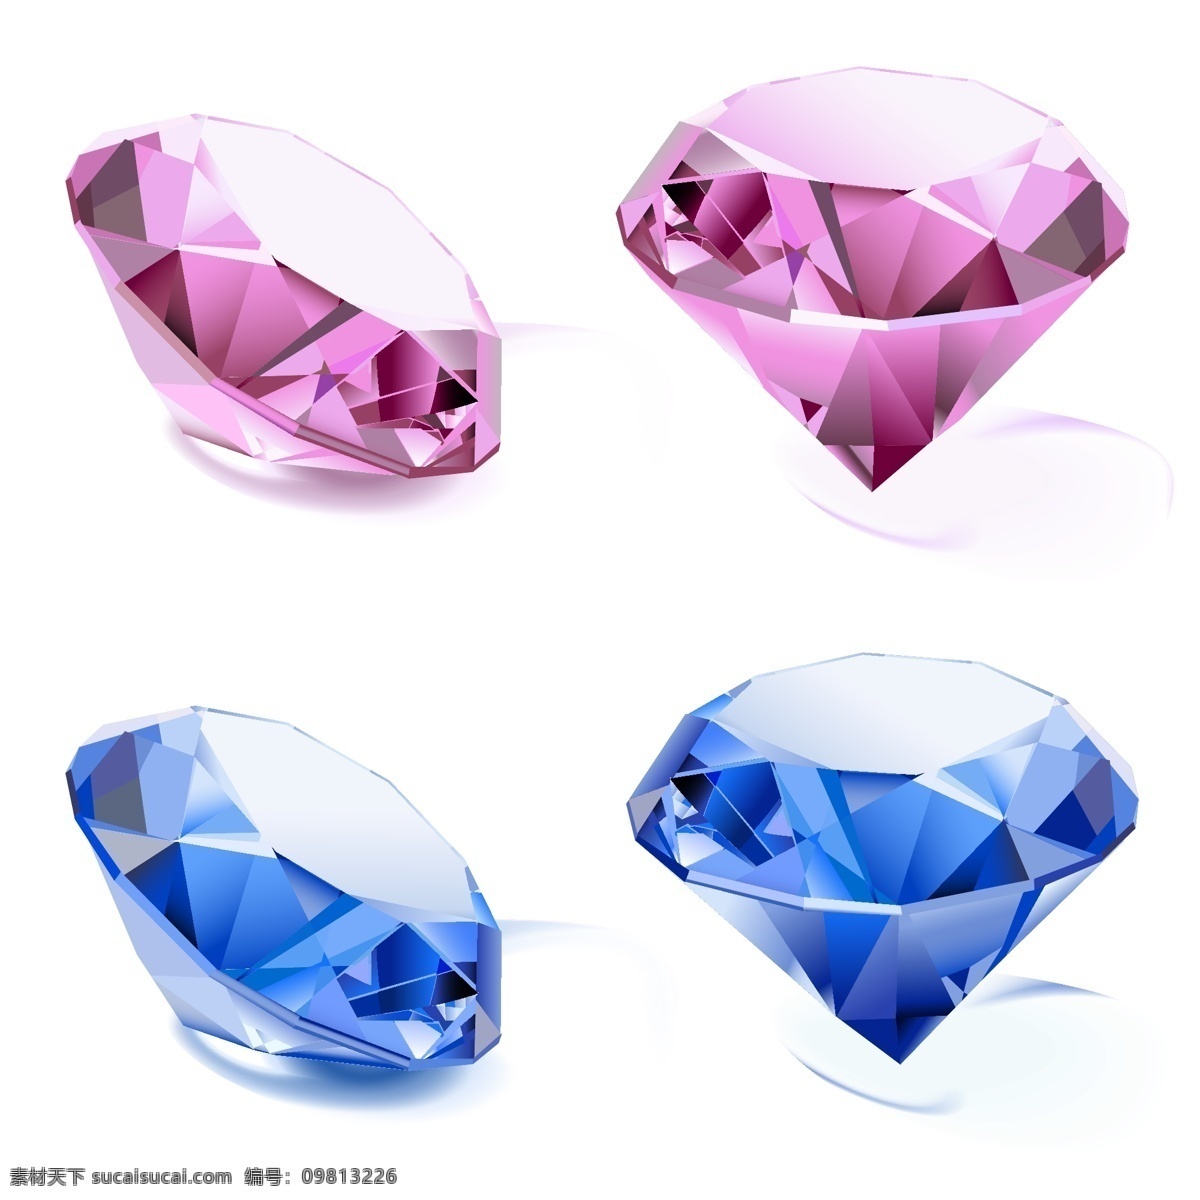 创意 宝石 装饰 图案 彩色钻石 彩色 钻石宝石 钻石 亮晶晶 闪耀 光彩夺目 晶莹剔透 天然矿石 珍贵 稀有 饰品